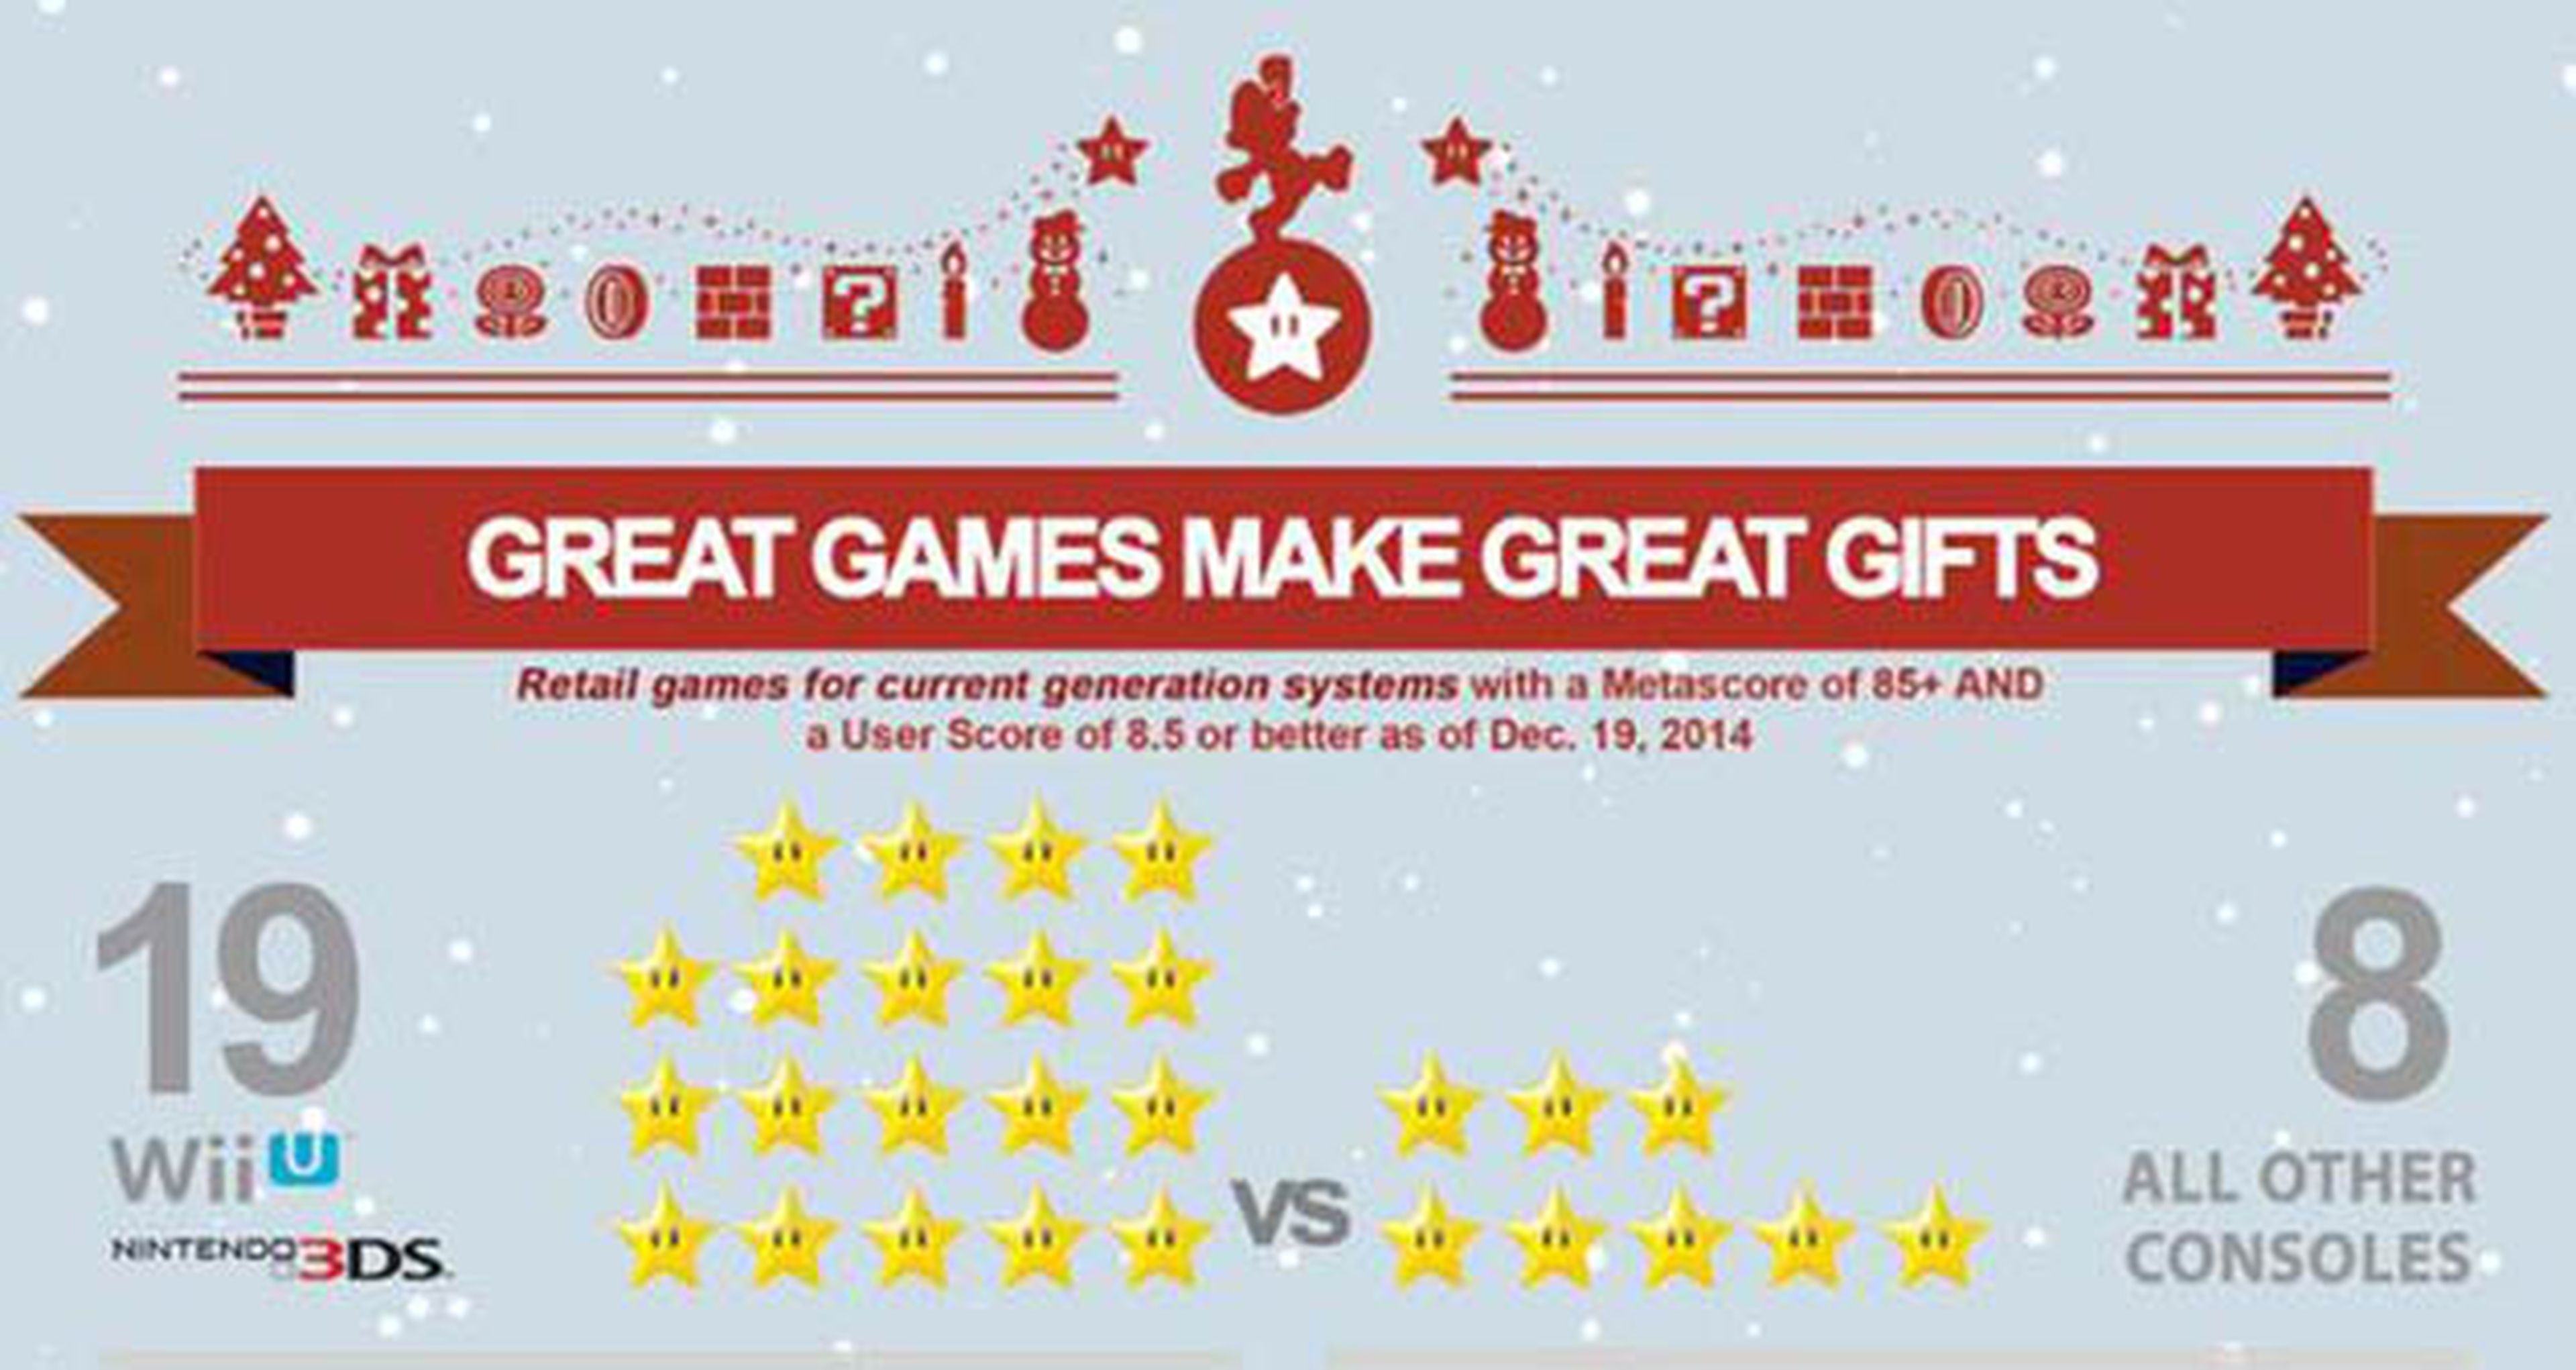 Nintendo con mejores juegos que PS4 y One, 2014 uno de los peores años... Las noticias de la semana 28/12/14